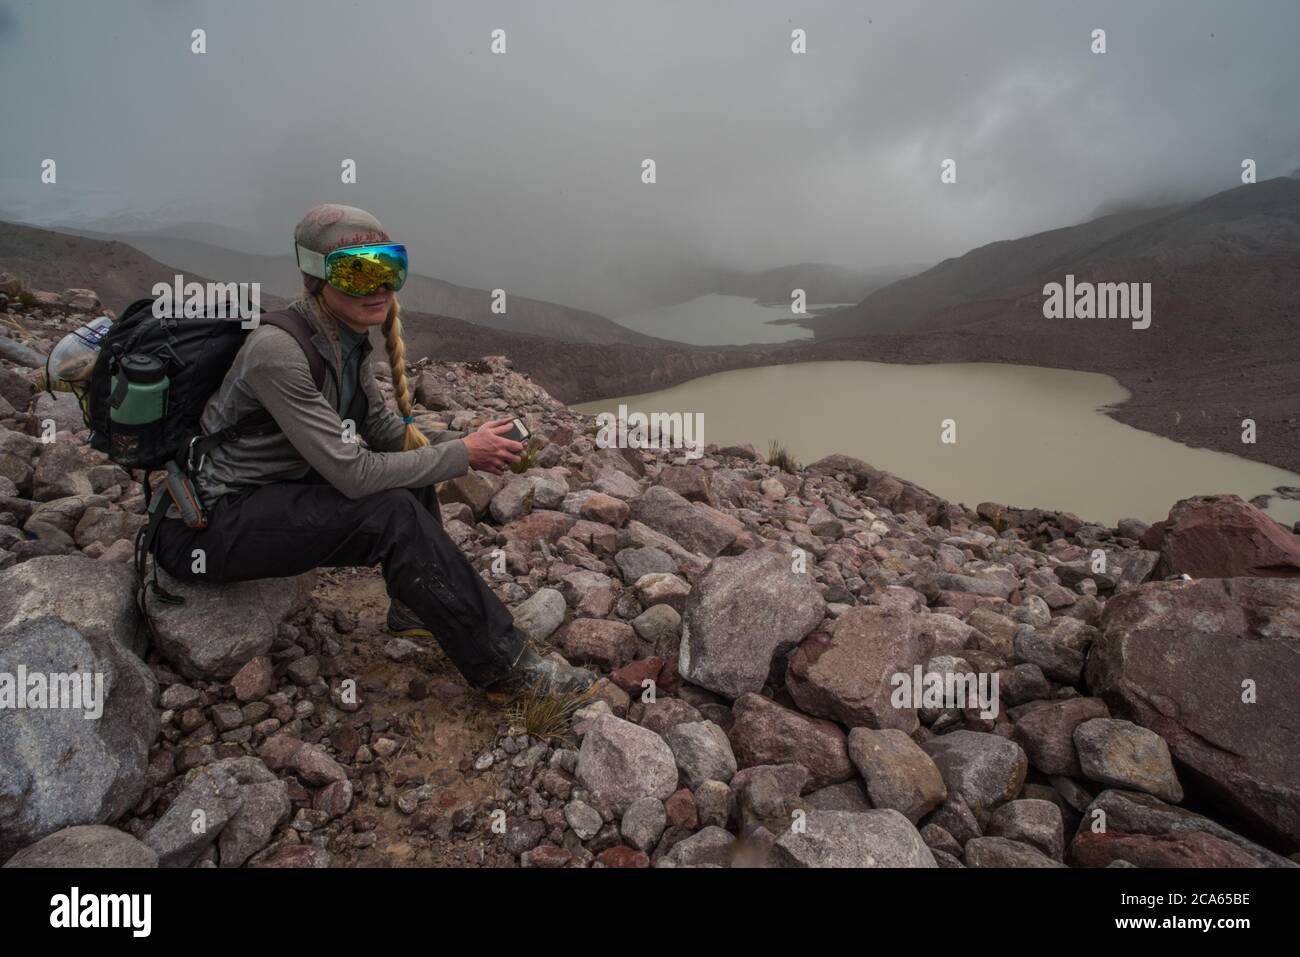 Ein Biologe, der durch die Cordillera Vilcanota wandert, macht eine Pause und sitzt auf einem Stein hoch in den Anden, wo es wenig Sauerstoff gibt. Stockfoto